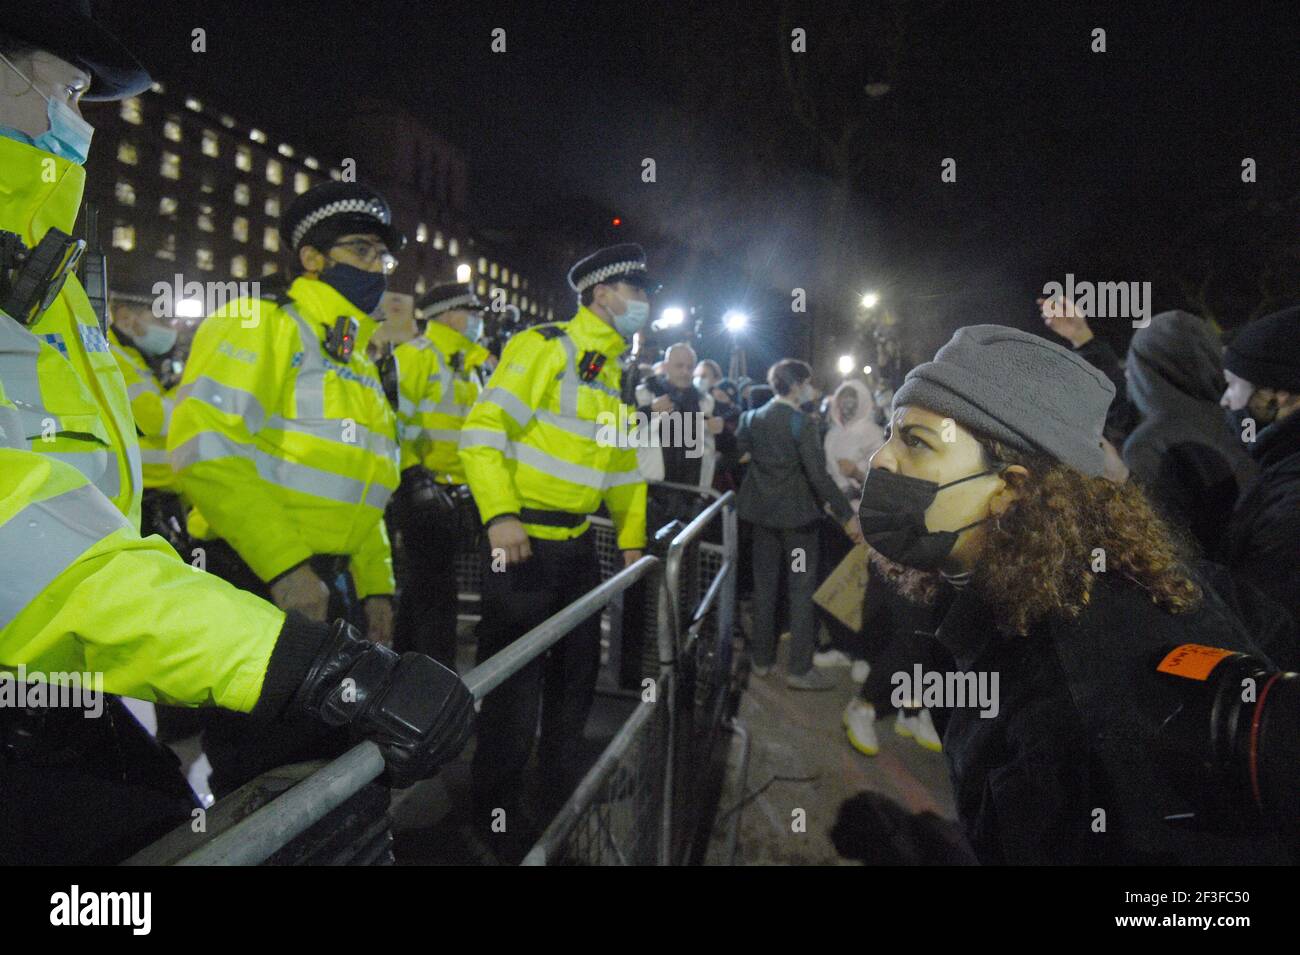 La policía y los manifestantes en las afueras de New Scotland Yard, Londres, durante una manifestación contra la violencia de género tras el asesinato de Sarah Everard. Foto fecha: Martes 16 de marzo de 2021. Foto de stock